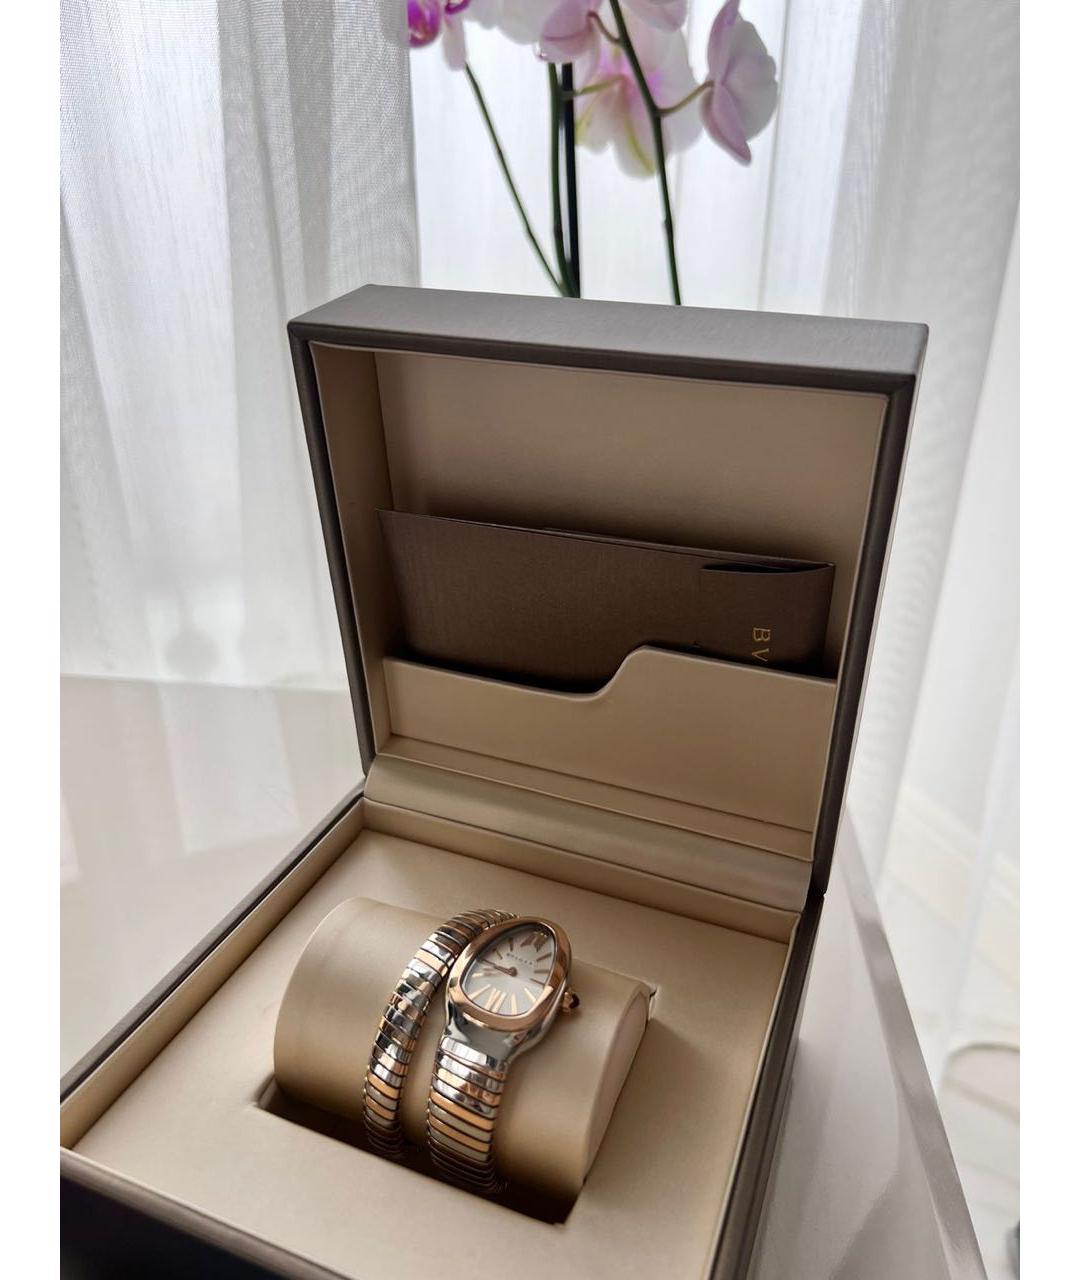 BVLGARI Мульти часы из розового золота, фото 2